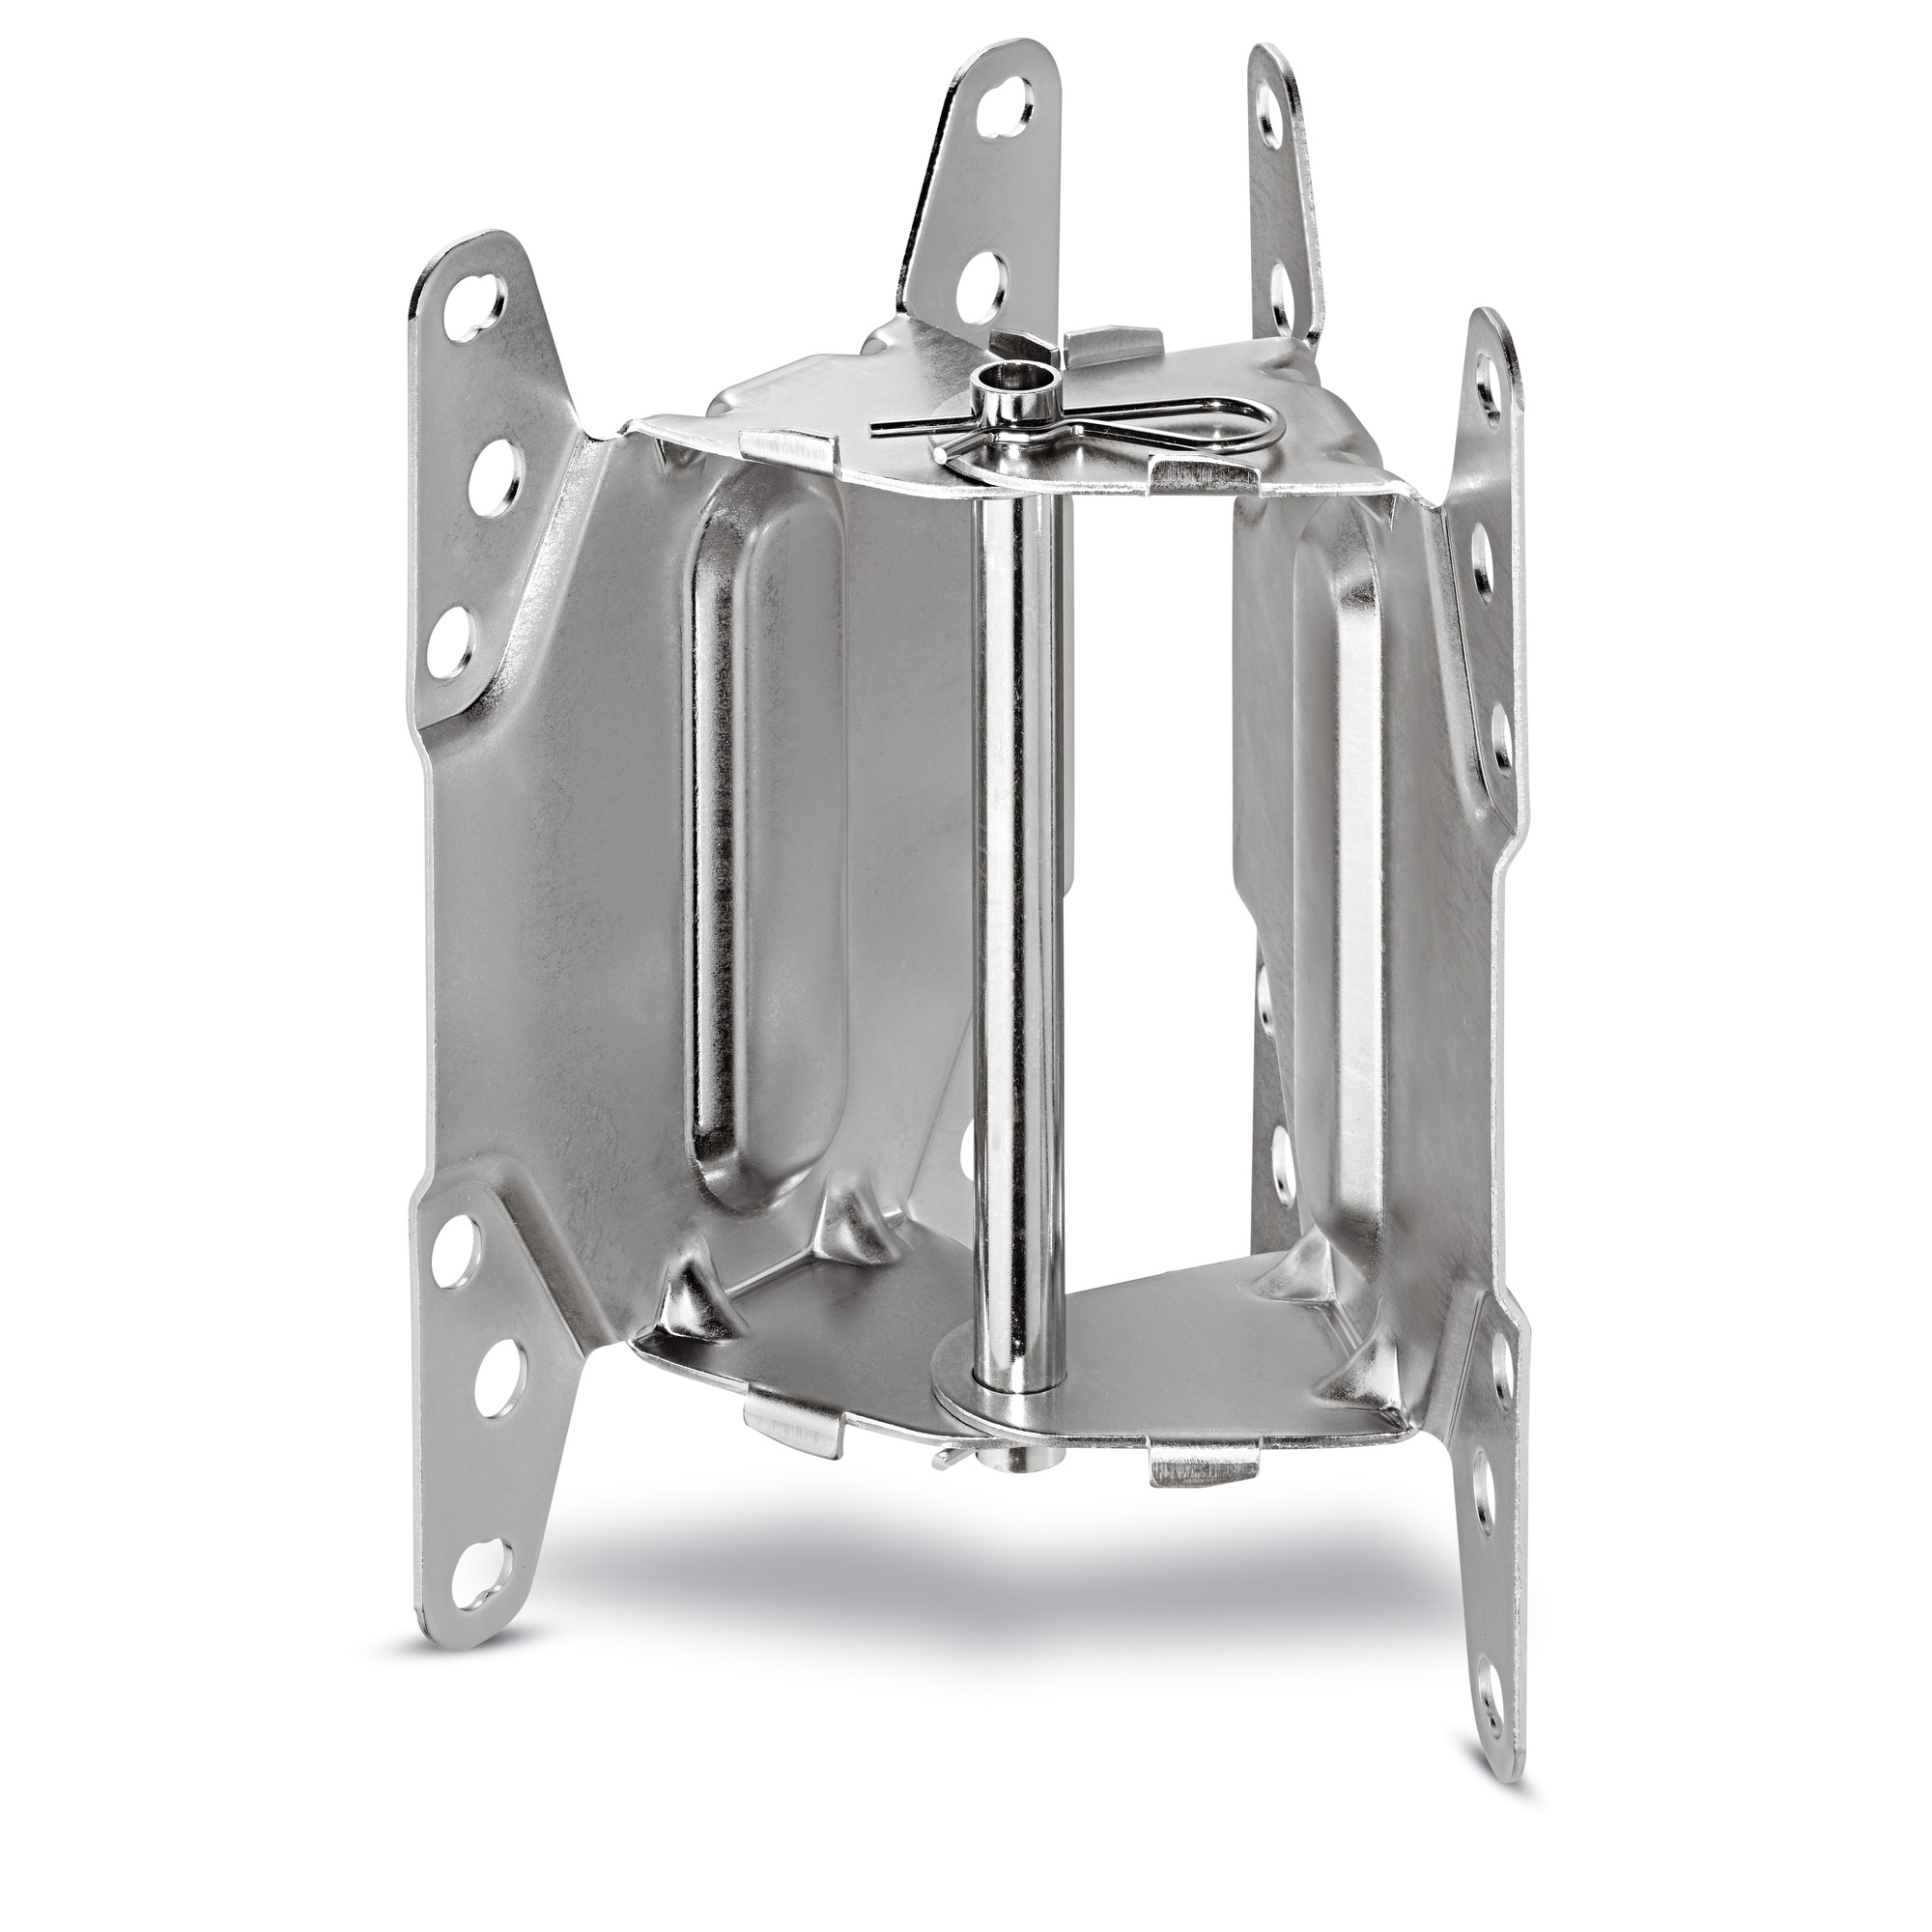 Kaercher Stainless steel swivel holder